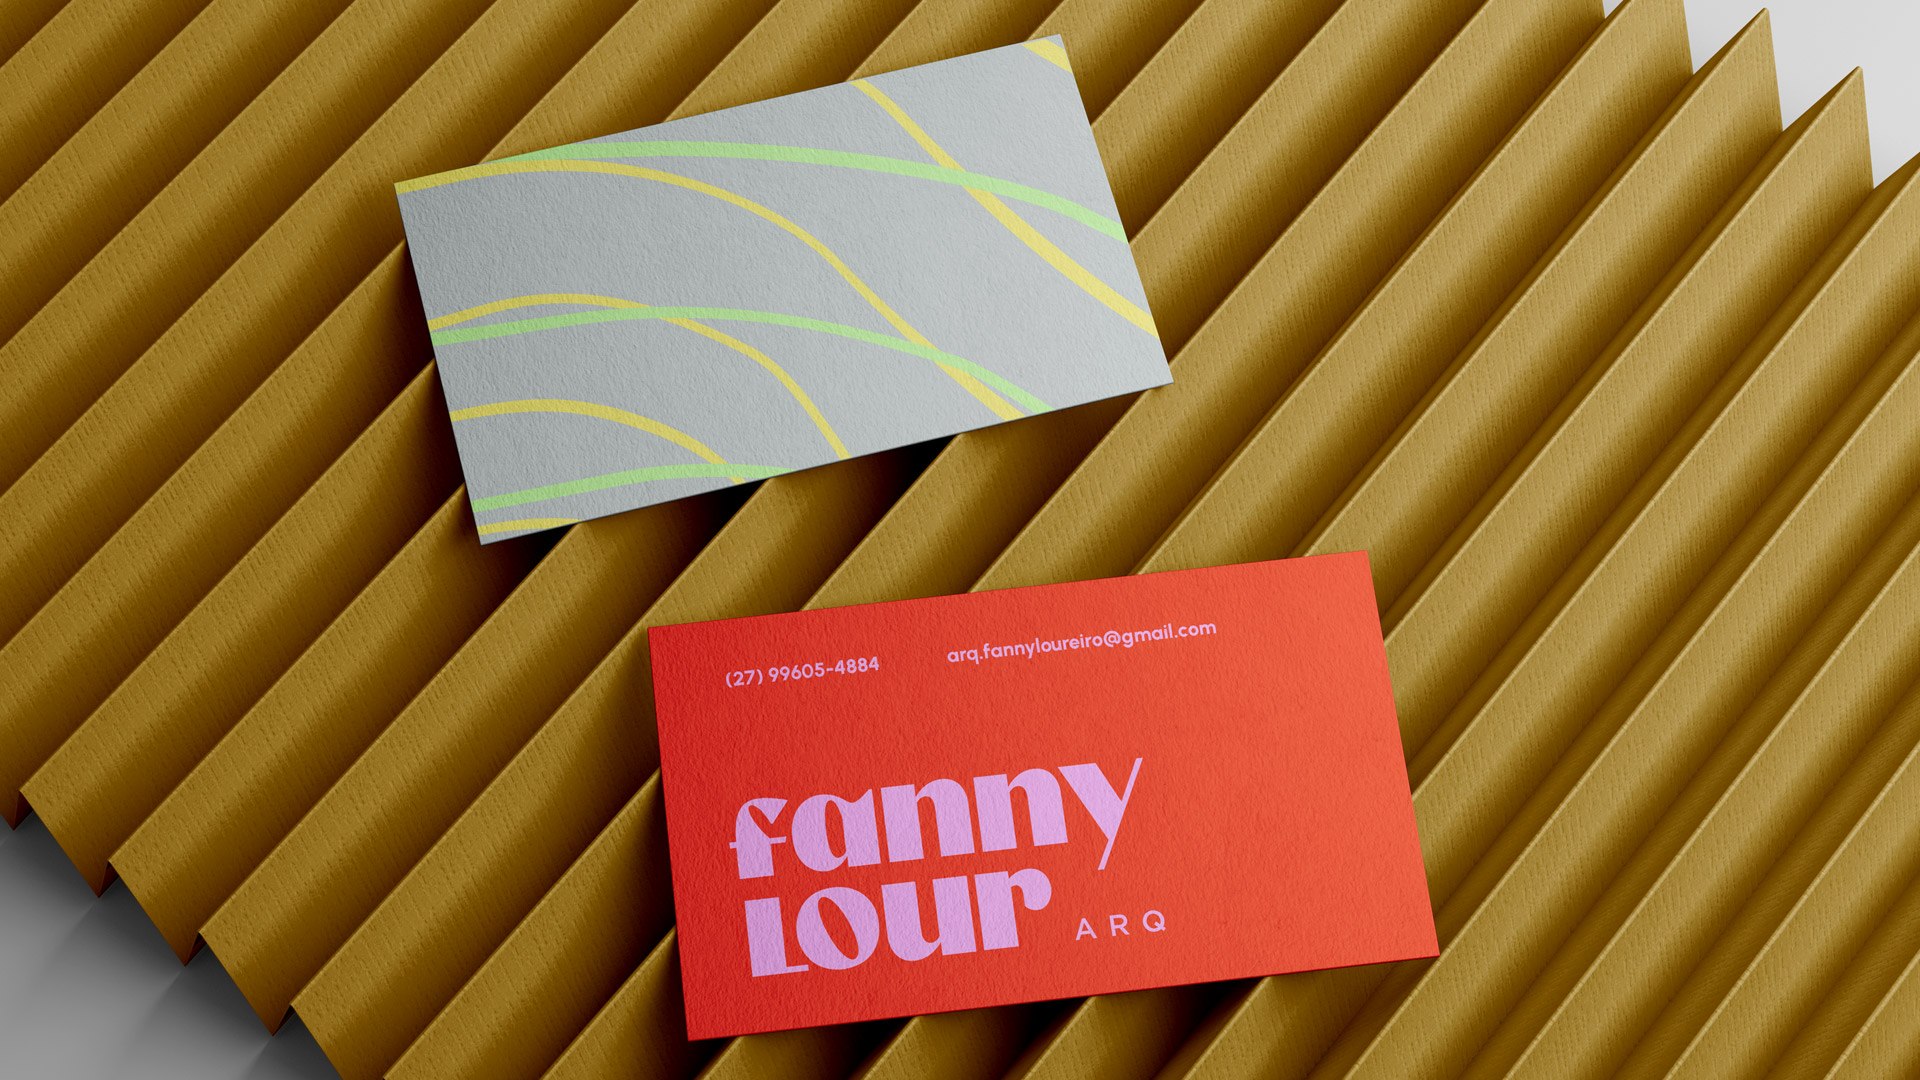 Fanny Loureiro Branding and Collaterals - Ave Design